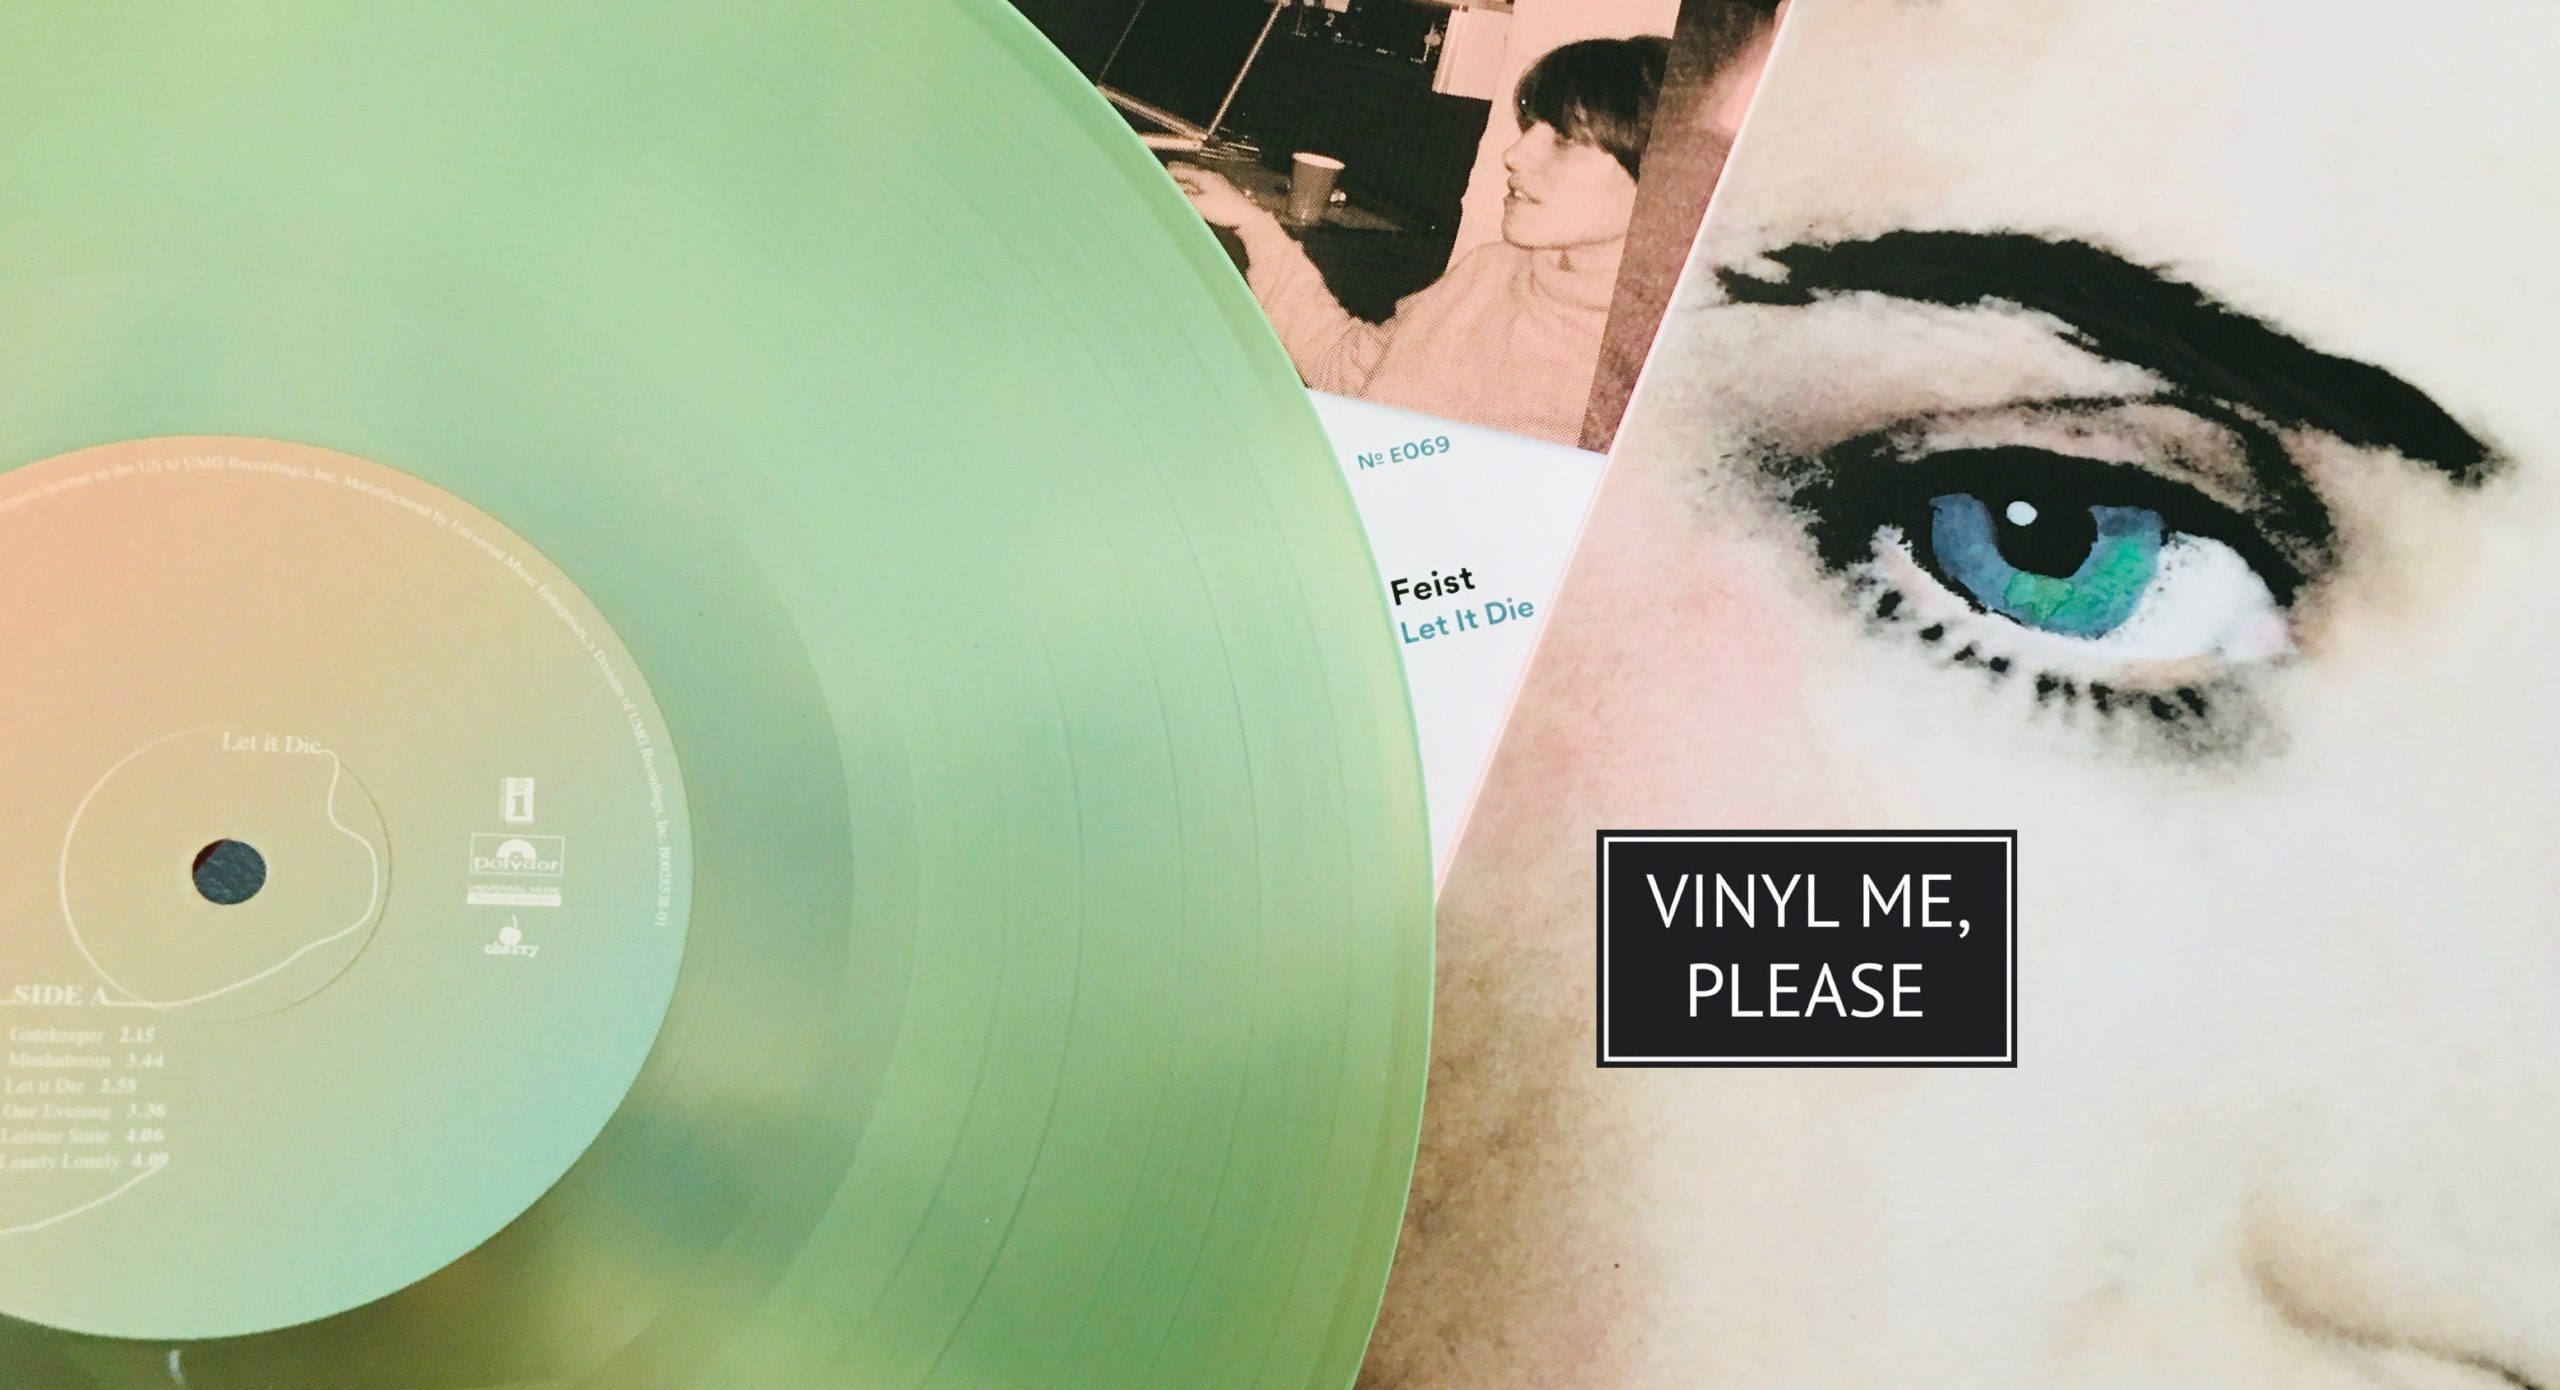 Vinyl me, please september edition: feist ‘let it die’